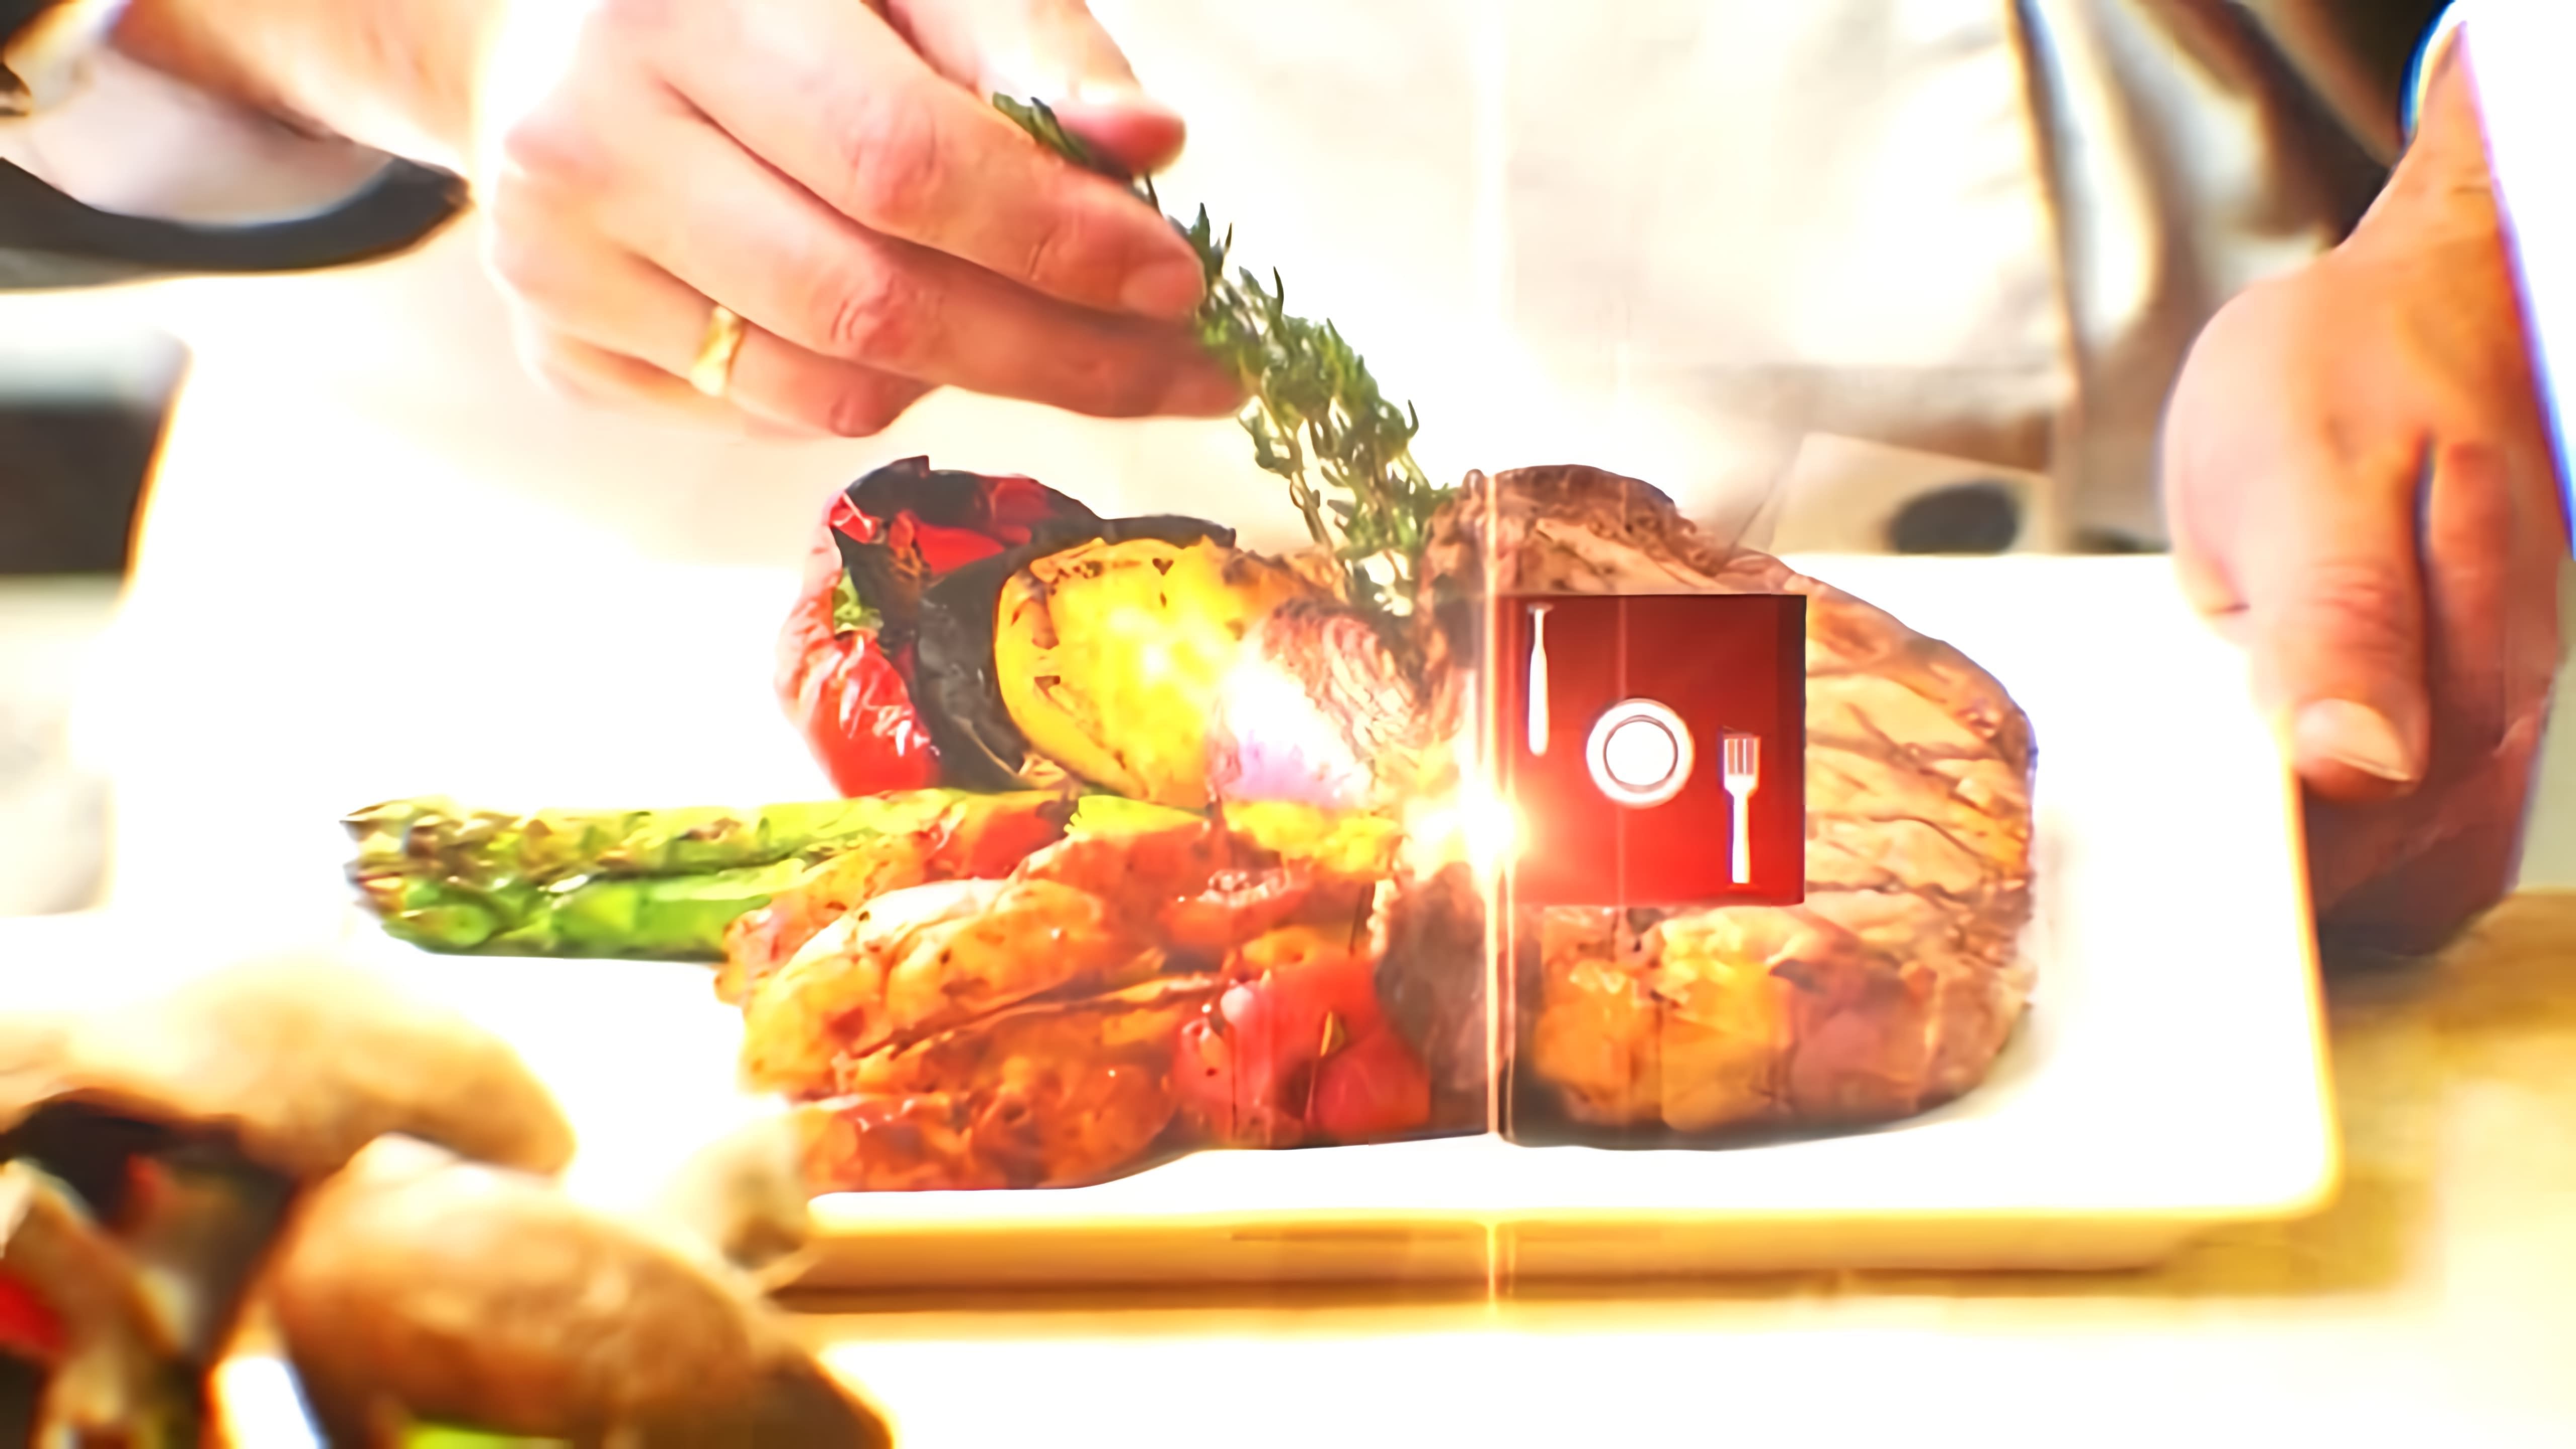 В этом видео демонстрируется процесс приготовления блюда из куриных желудочков с тушеной капустой